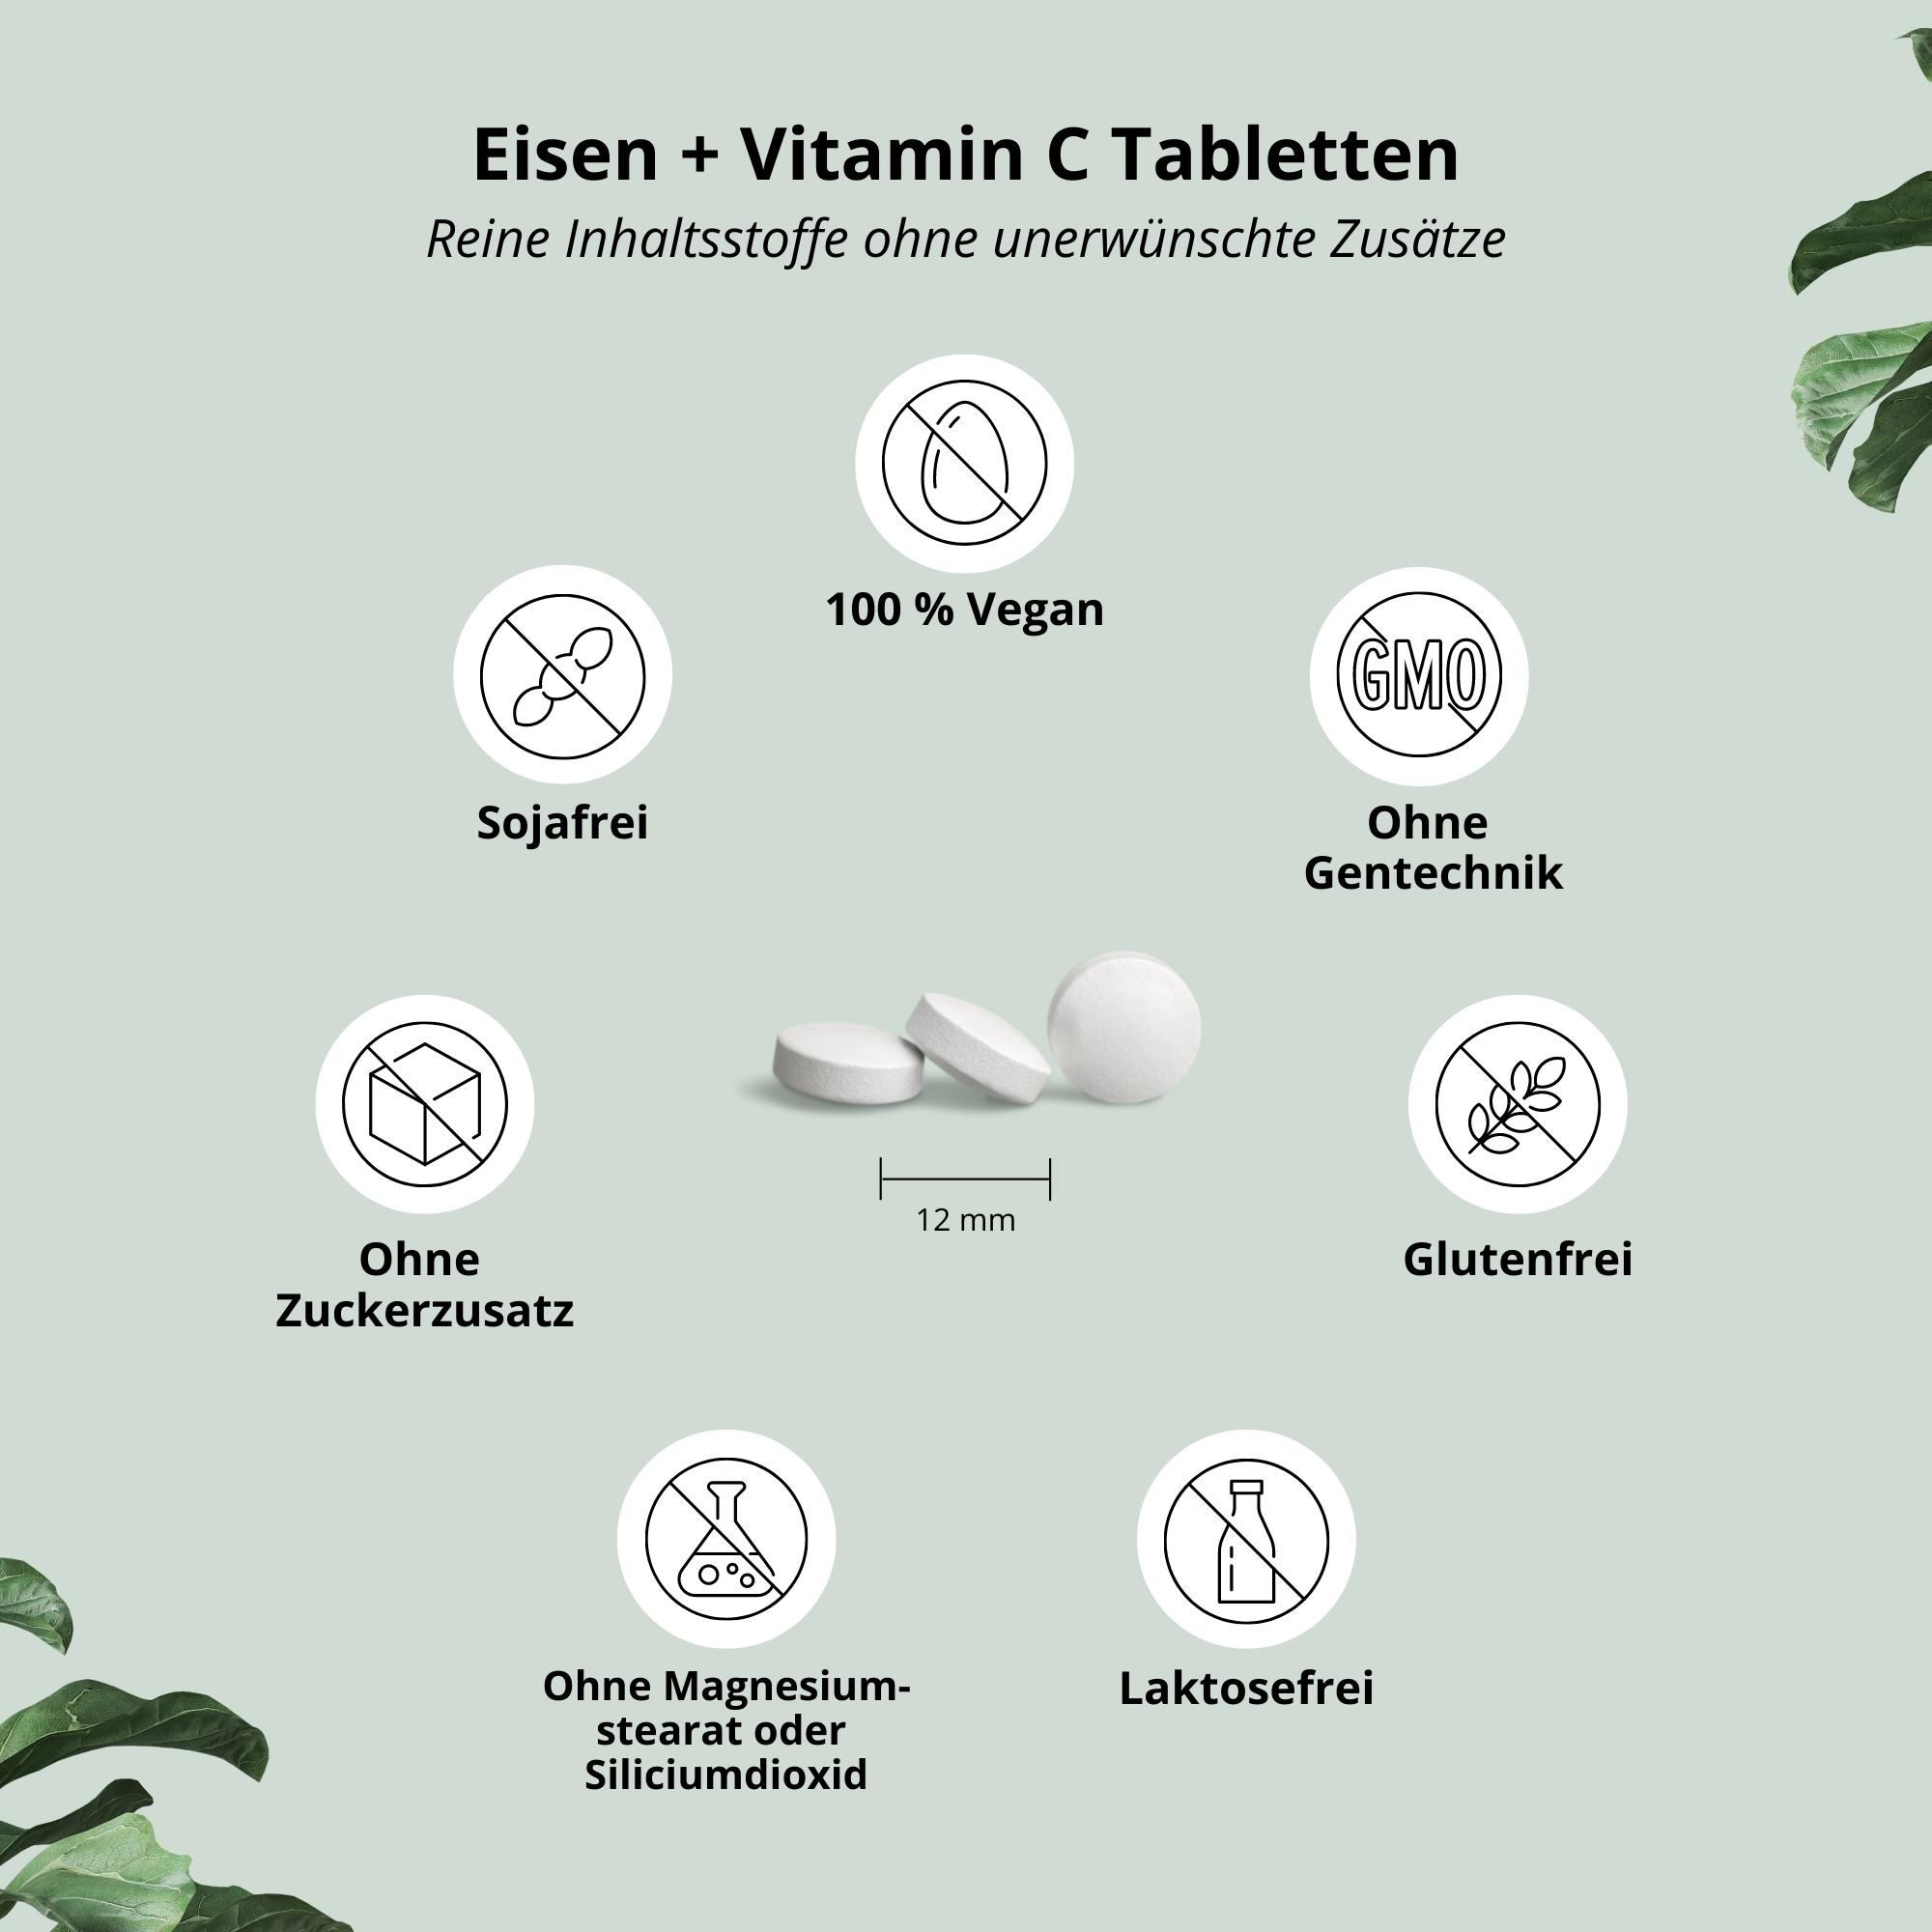 Eisen + Vitamin C Tabletten